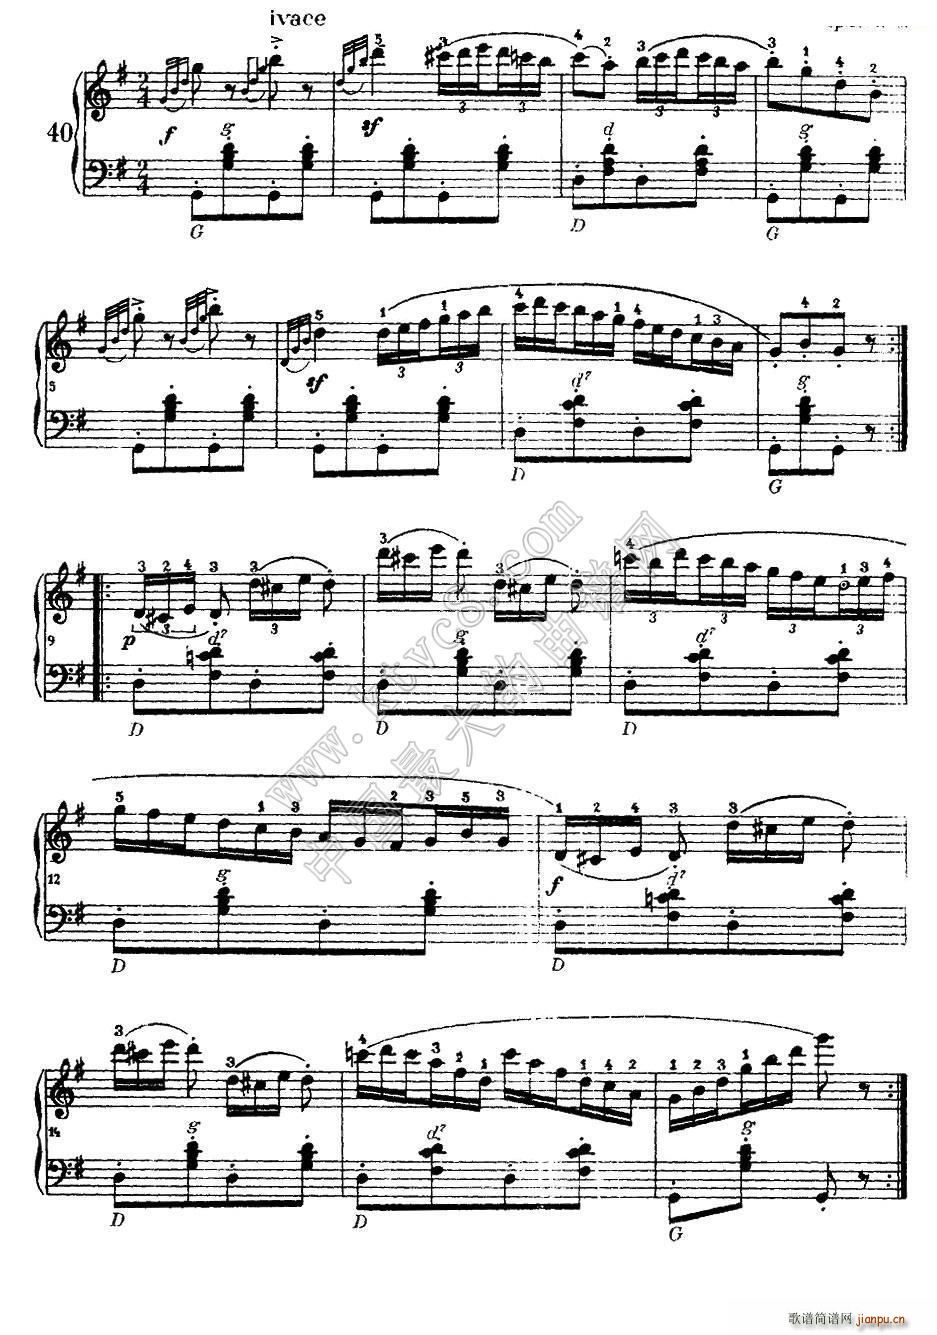 车尔尼手风琴练习曲集 第Ⅰ册 37 44(手风琴谱)3